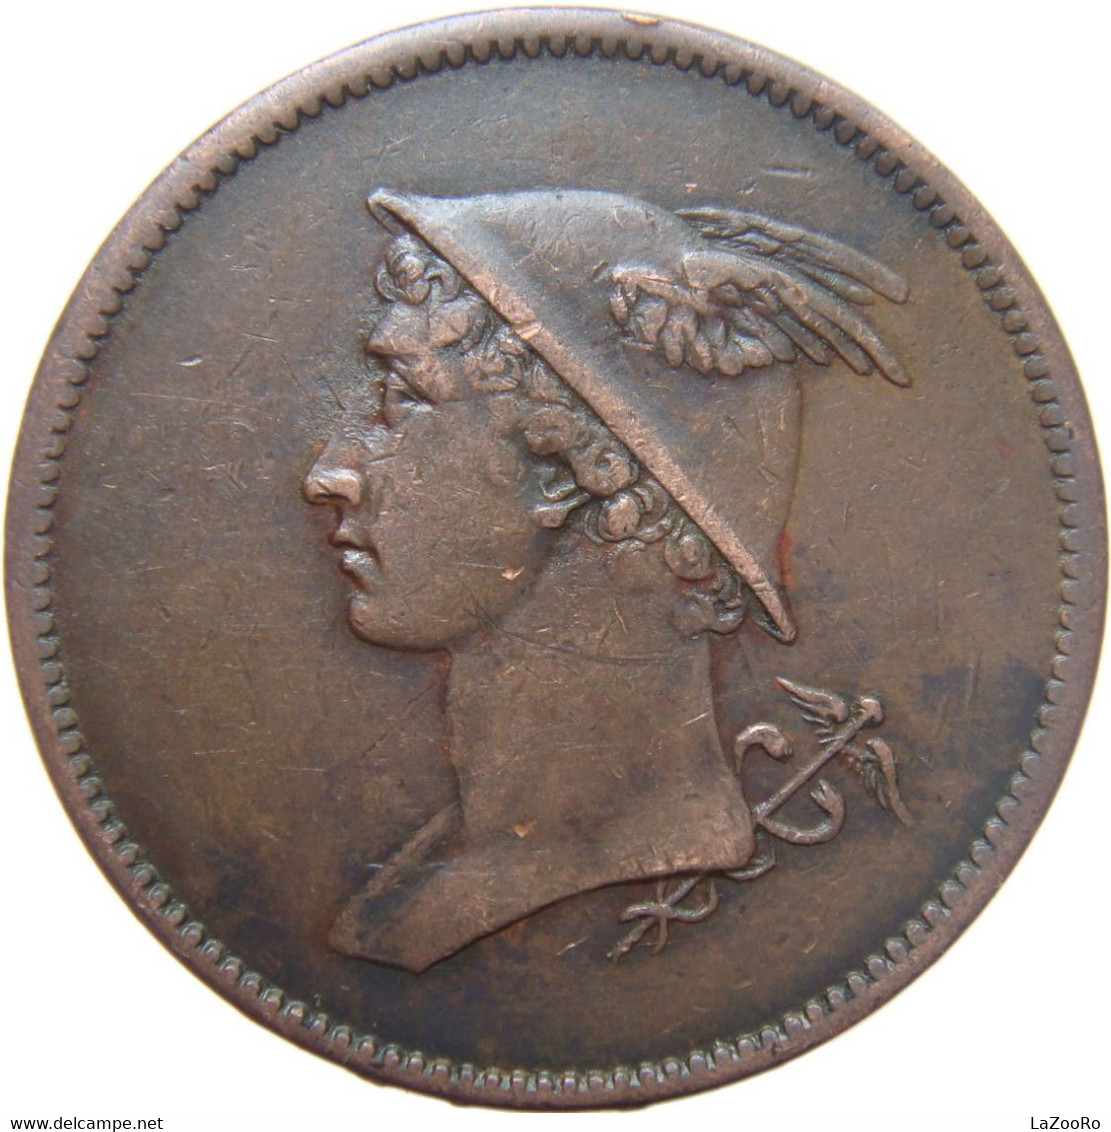 LaZooRo: Great Britain Mercury 1/2 Penny 1809/10 VF - Comercio Exterior, Ensayos, Contramarcas Y Acuñaciones